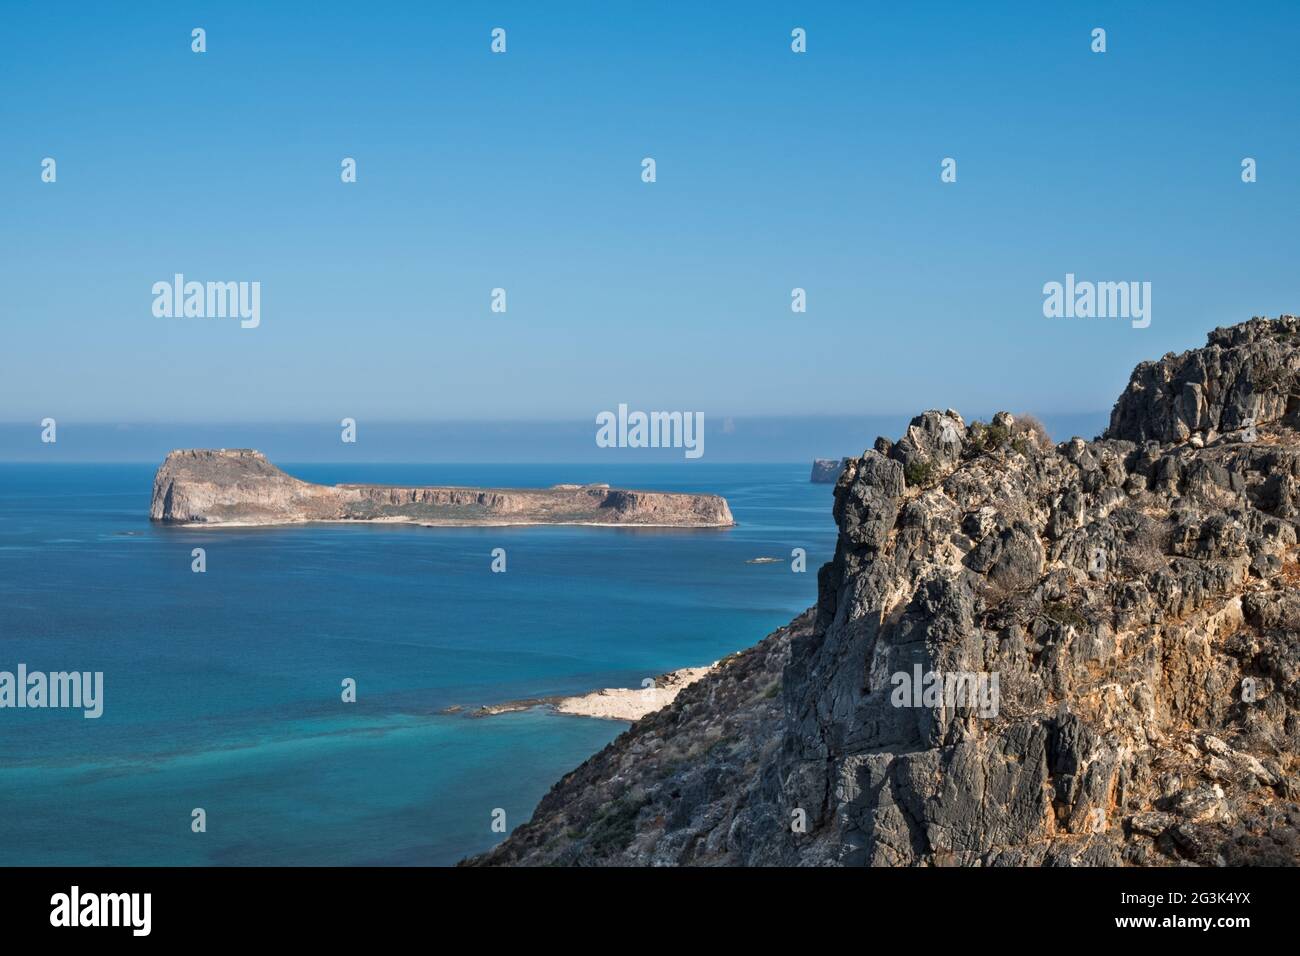 Vista desde Kreta Foto de stock